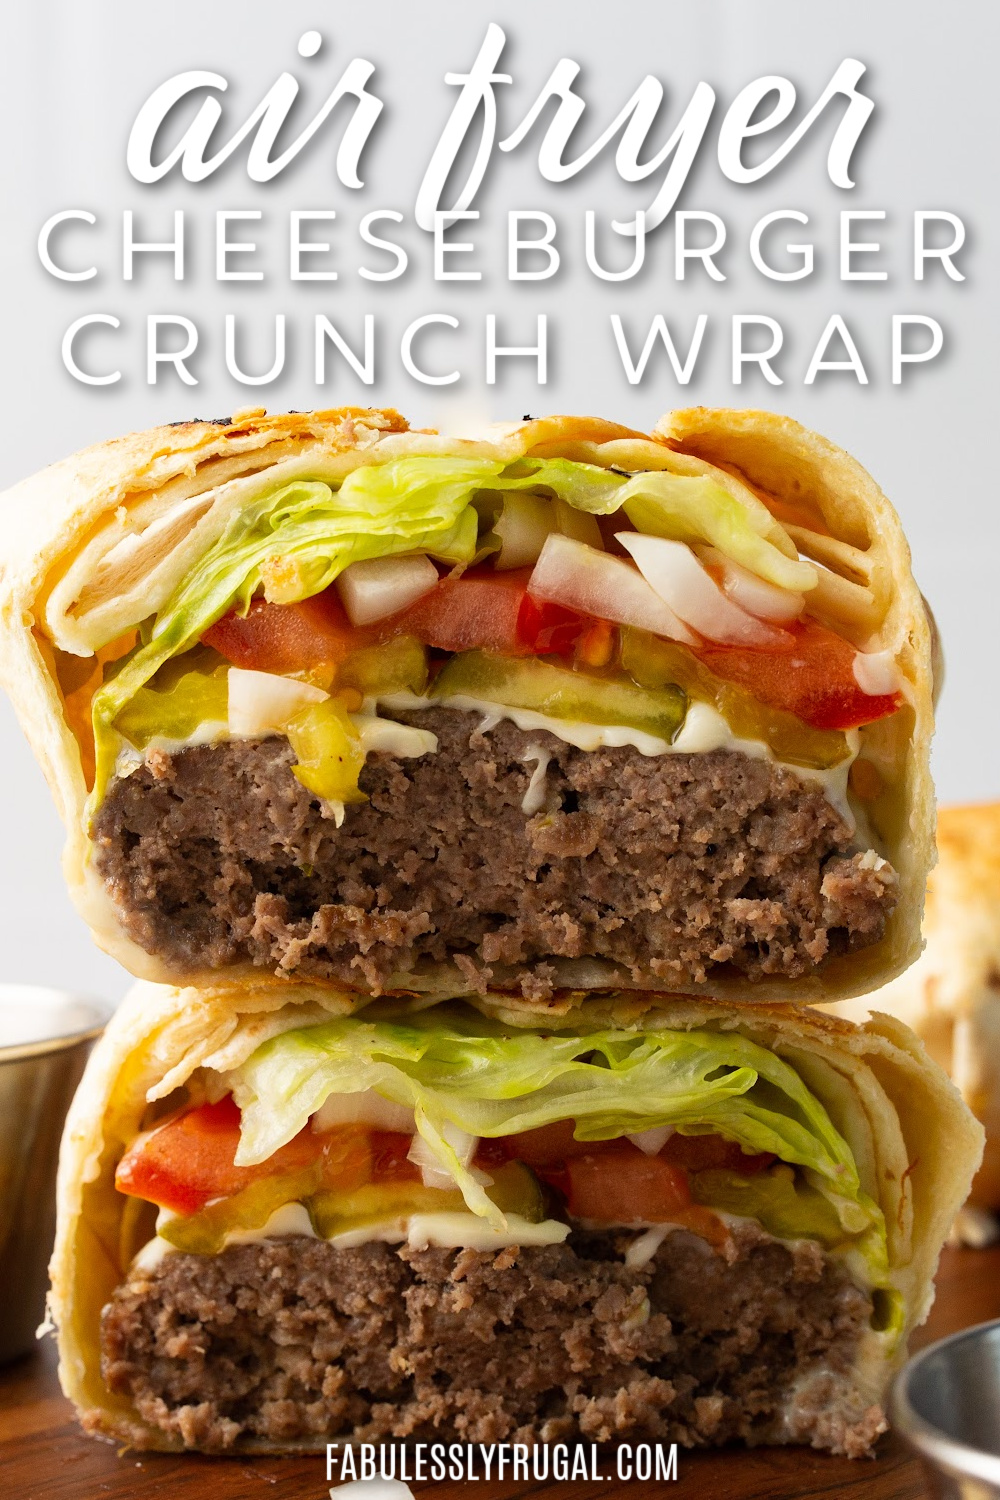 air fryer cheeseburger crunch wrap